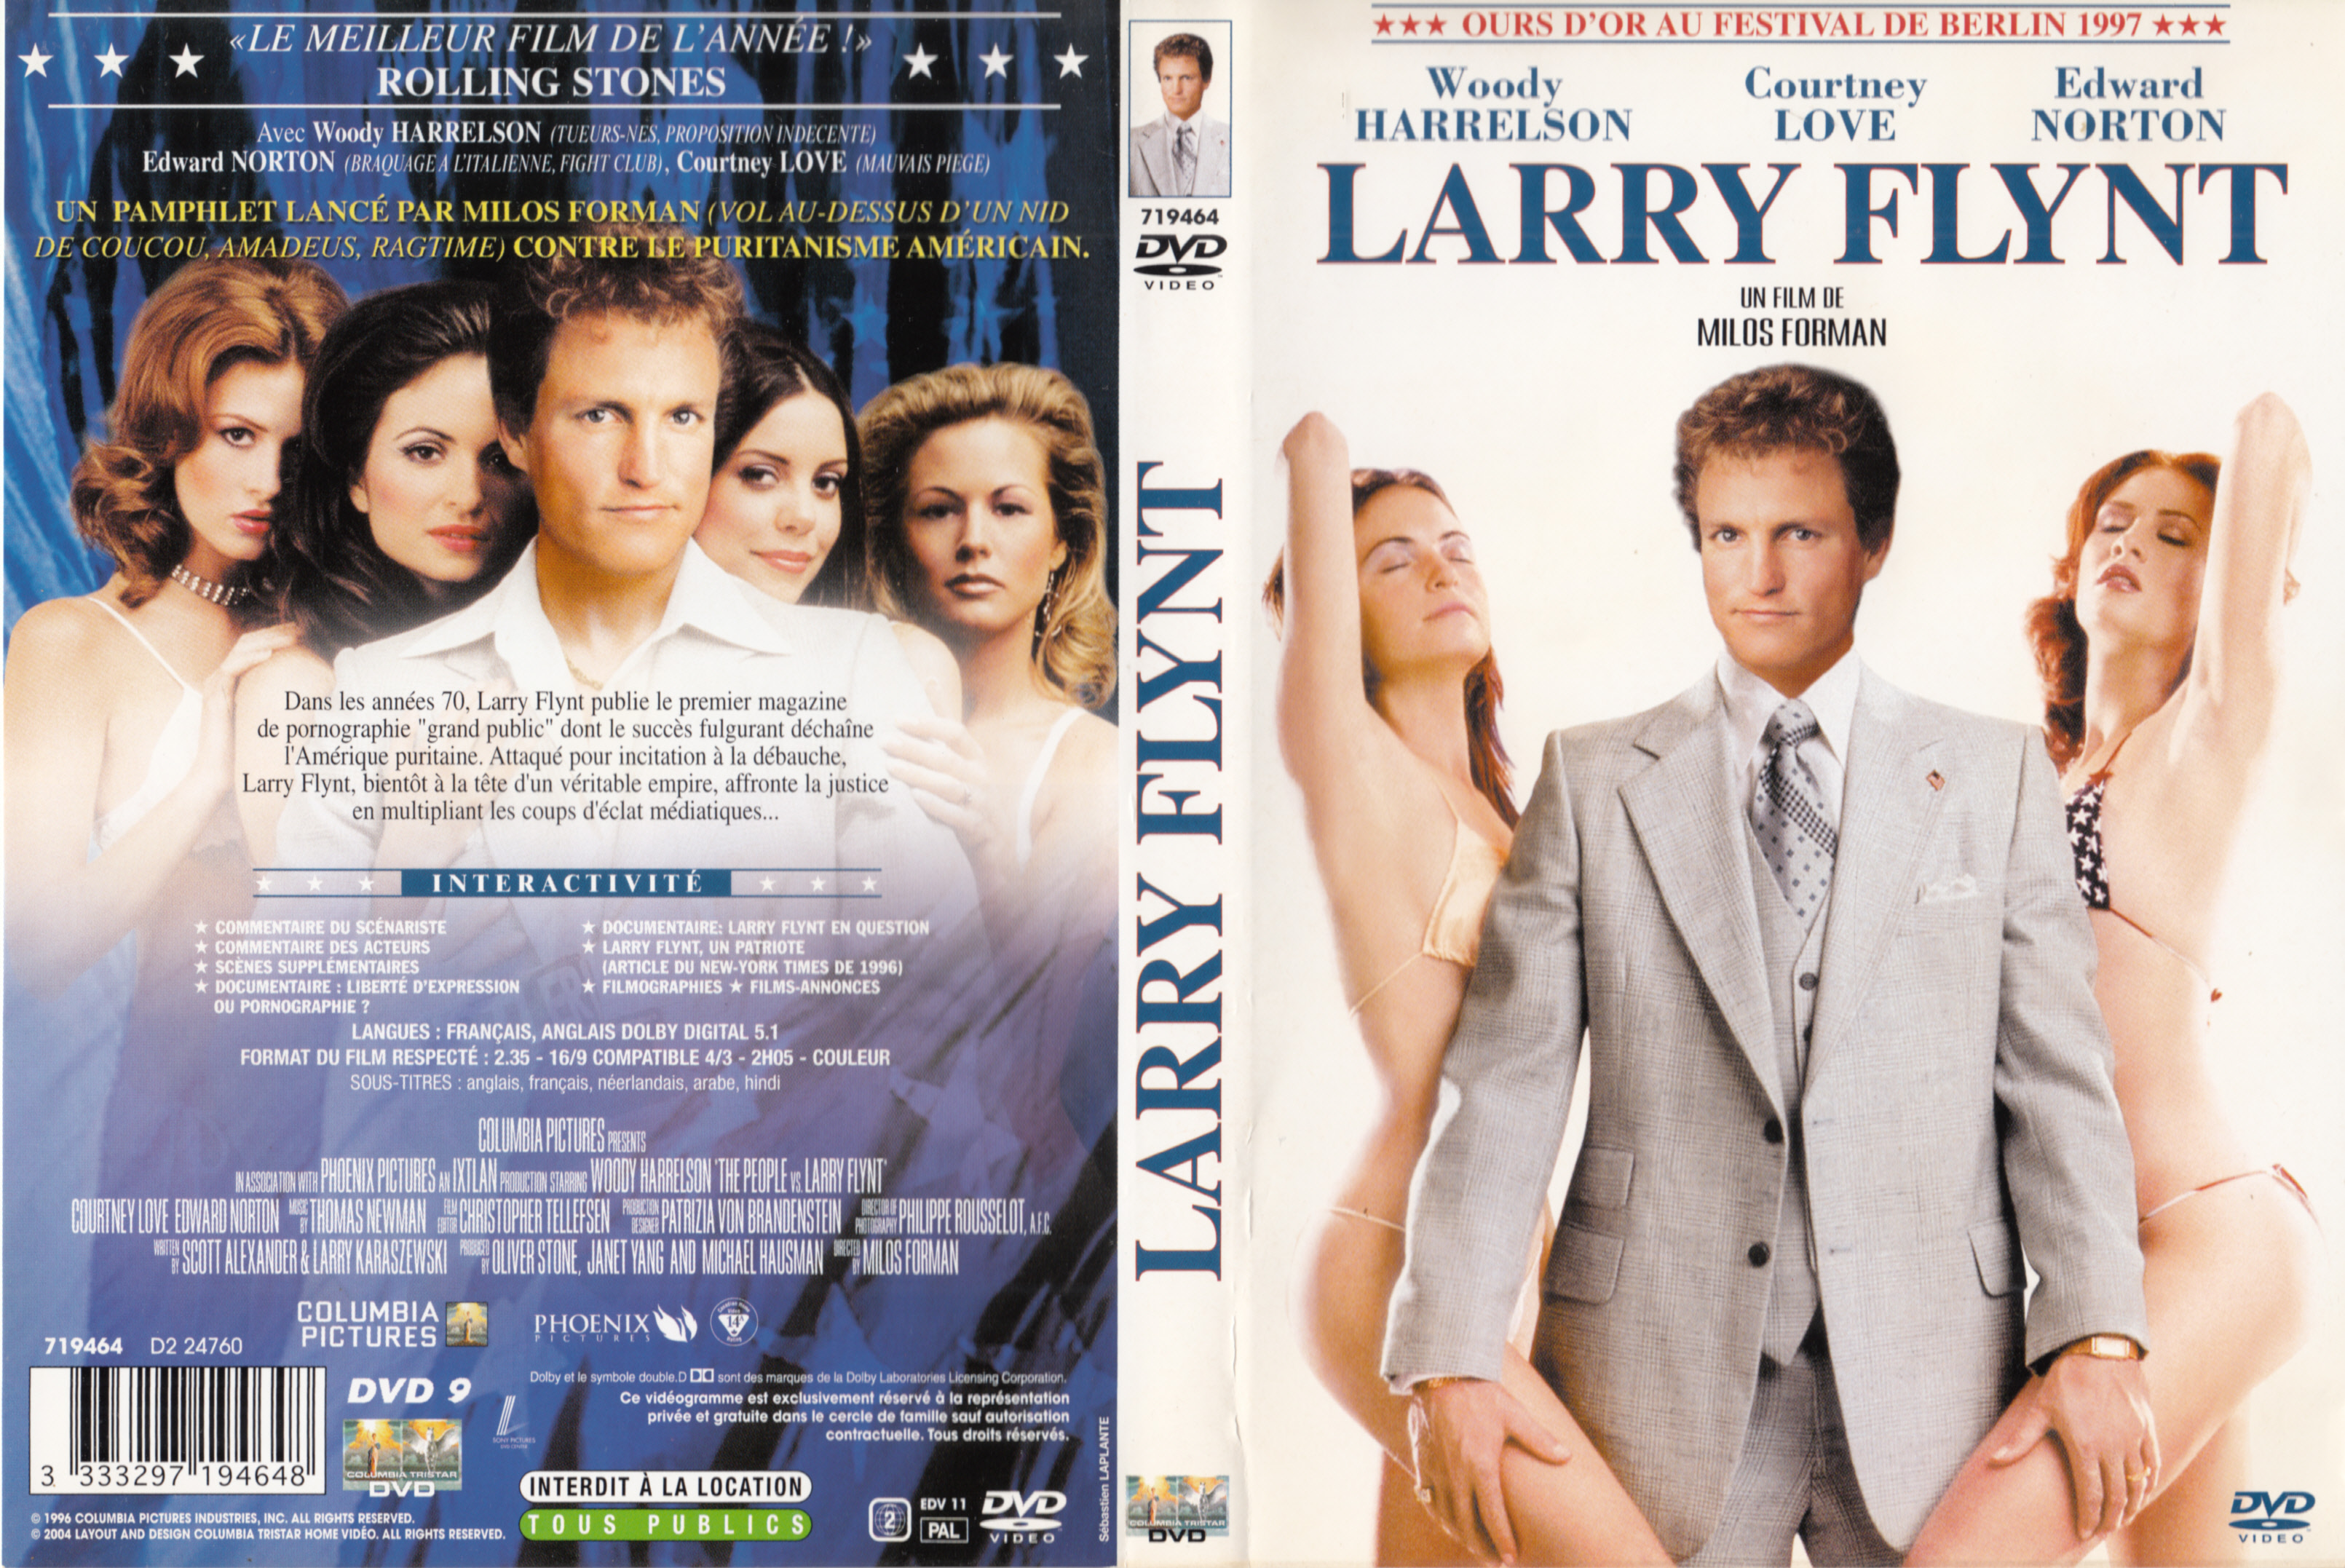 Jaquette DVD Larry Flynt v2